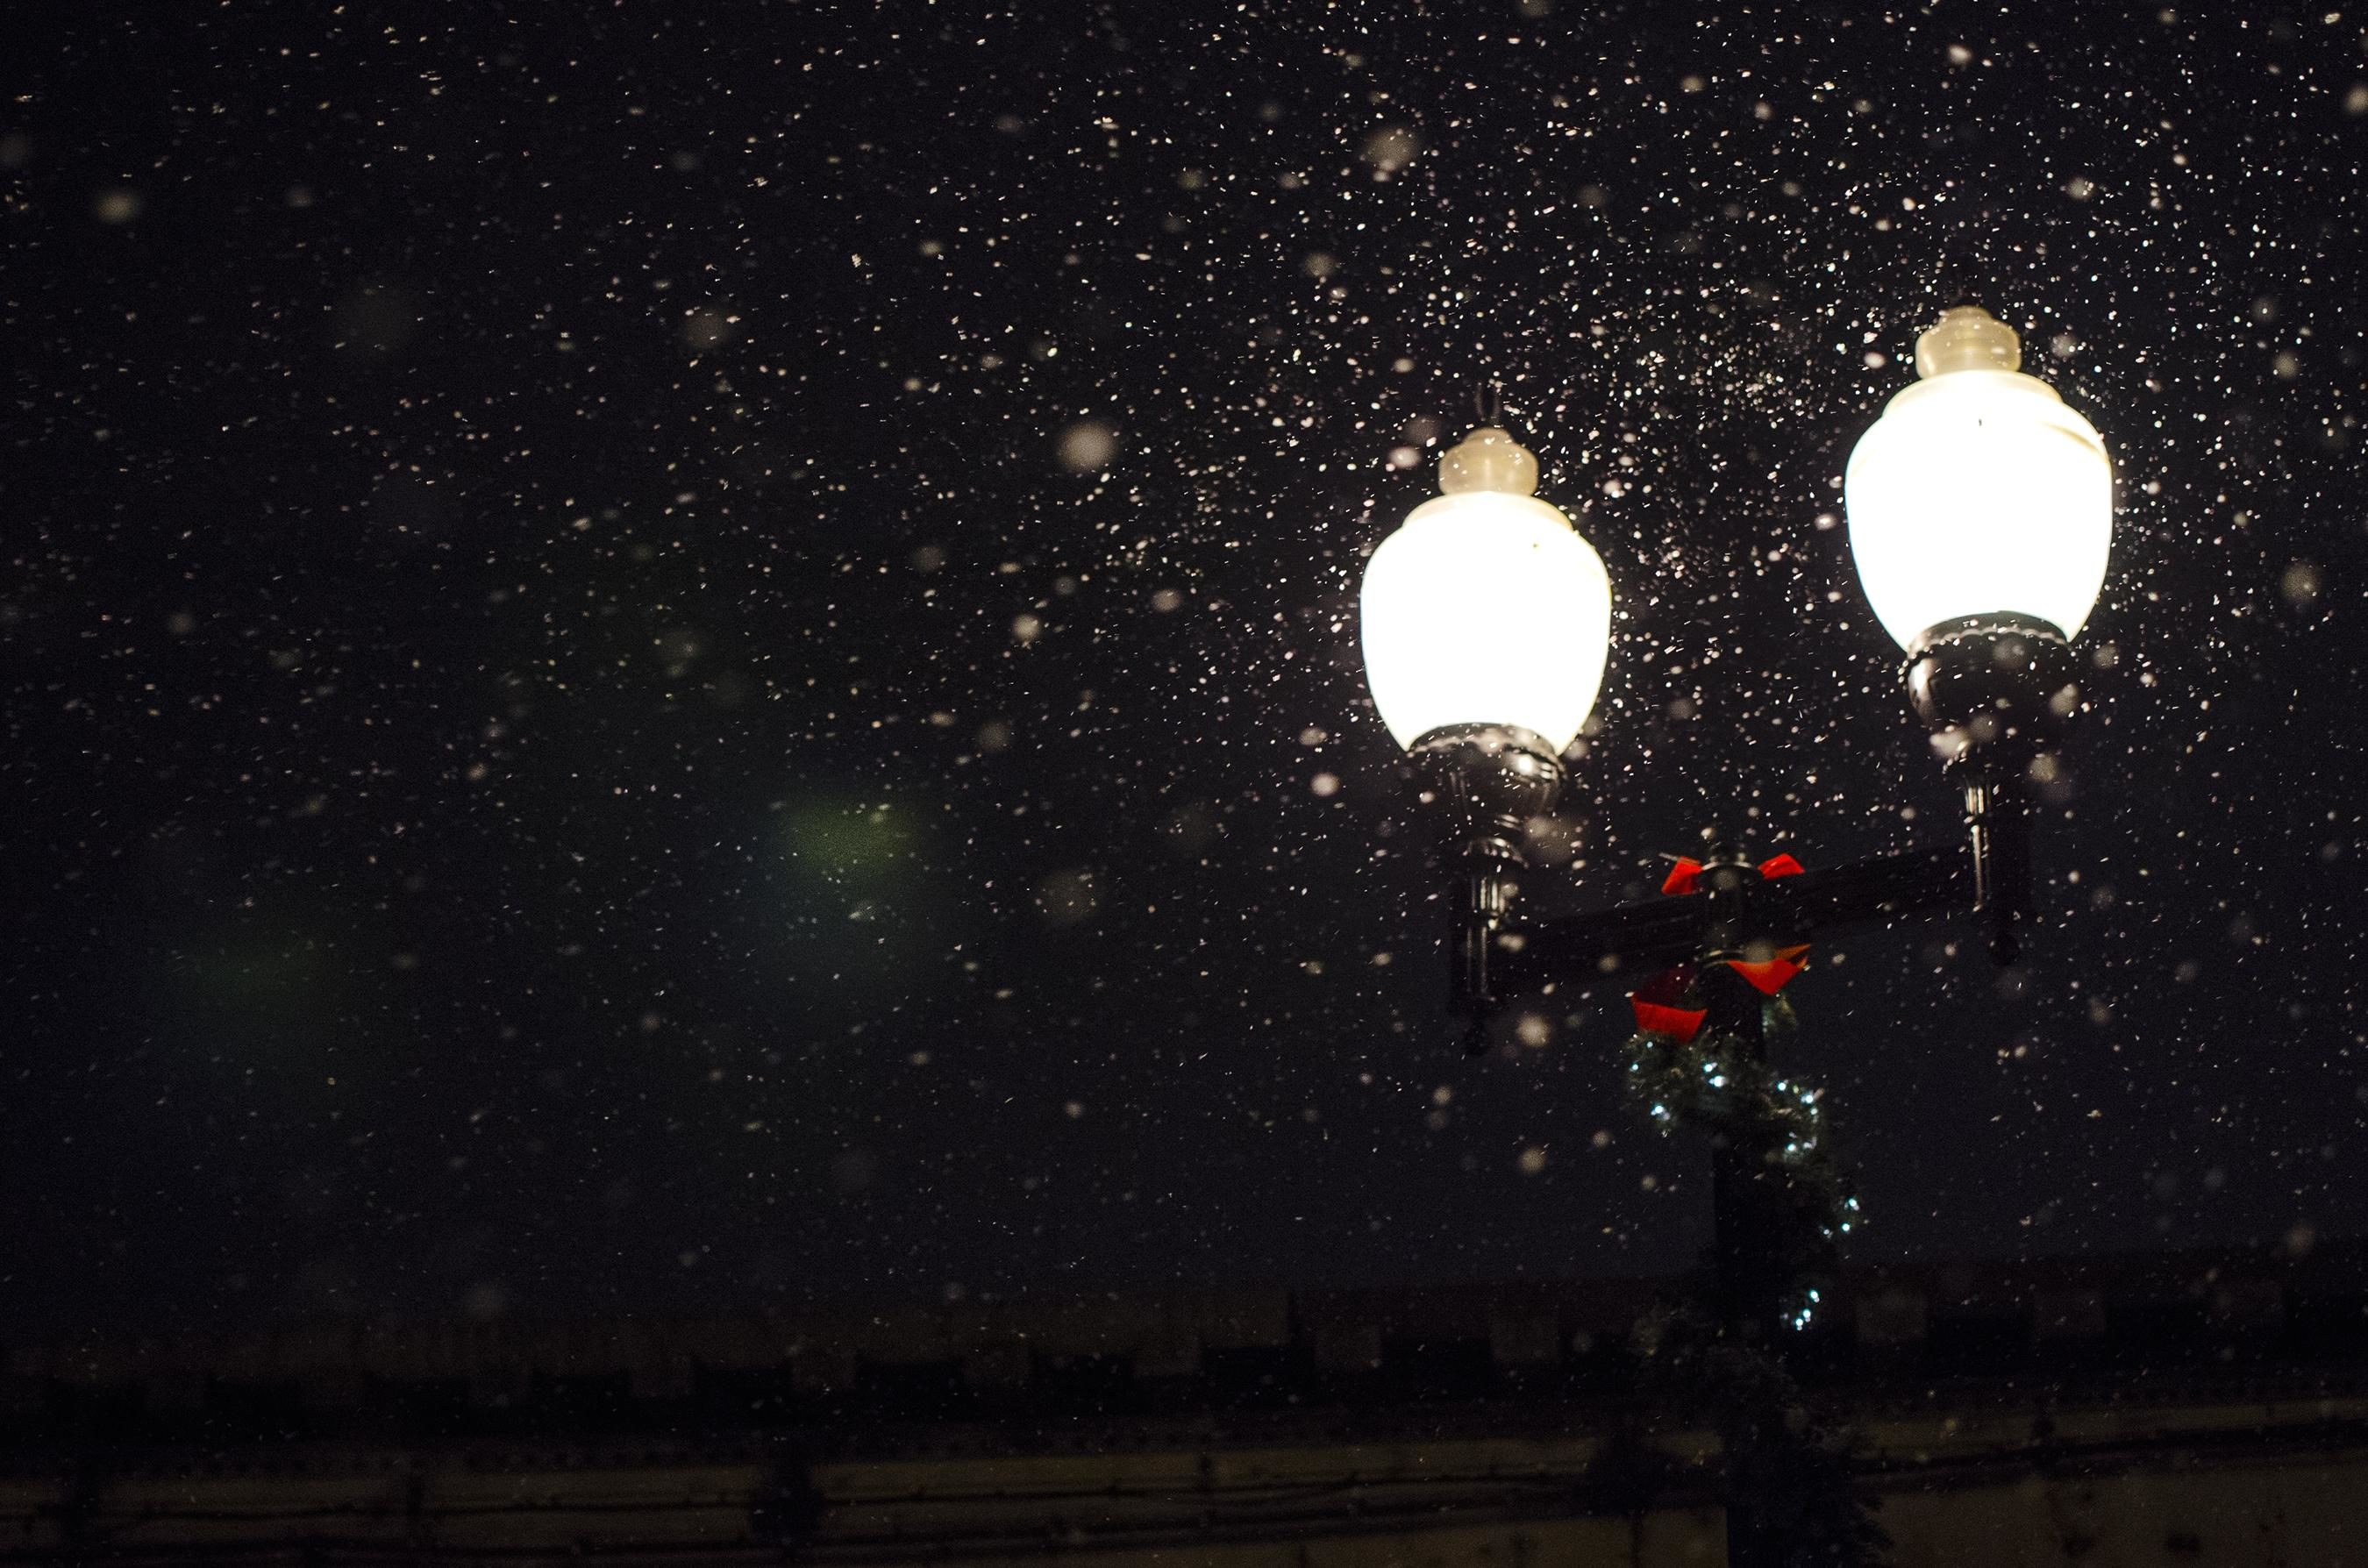 雪夜路灯图片图片